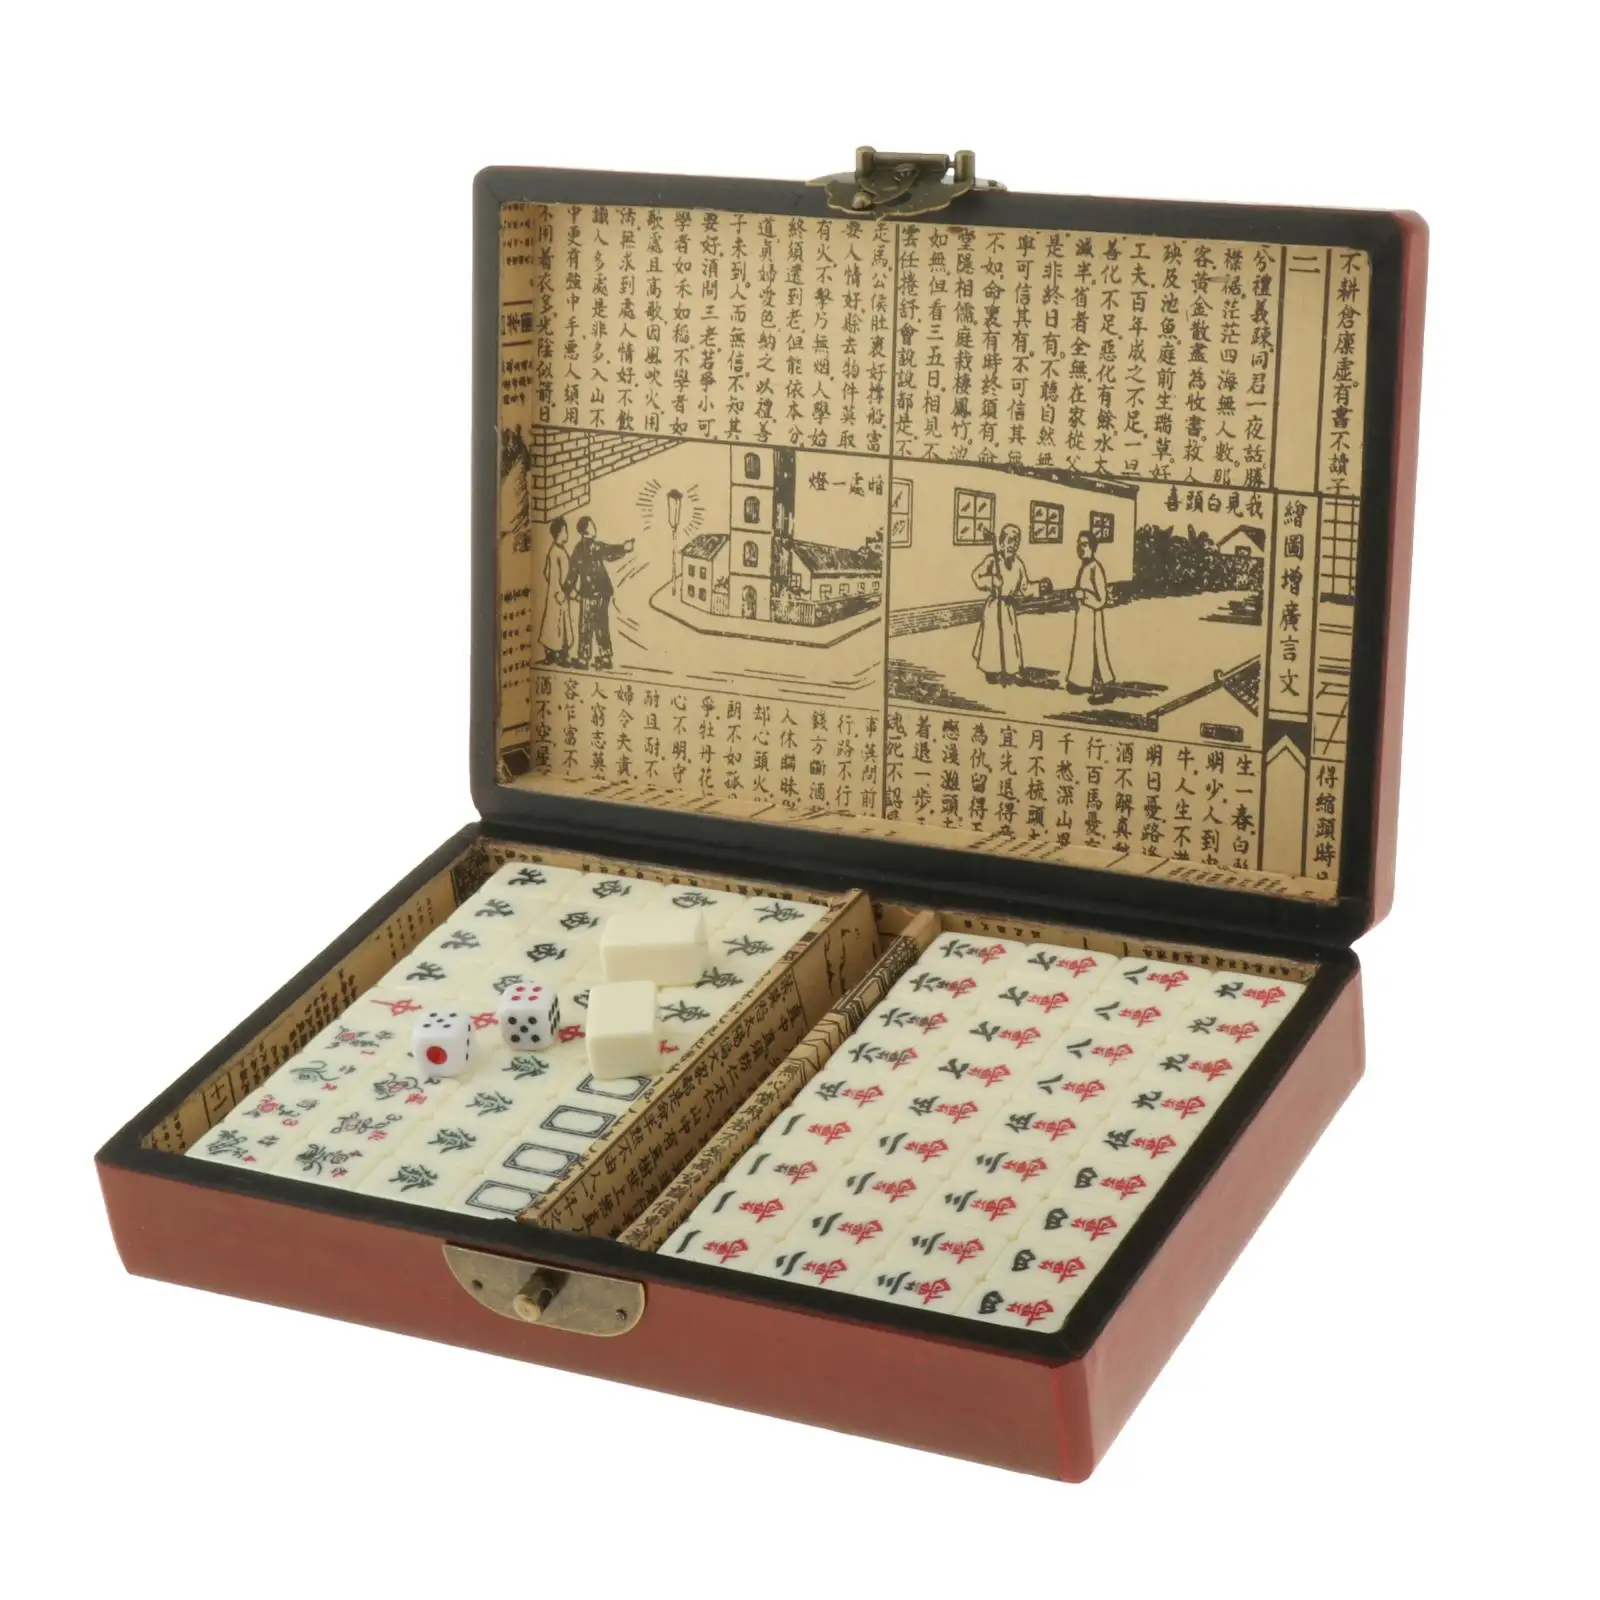 Sammlerstück Chinese Antique Mahjong Chinese Antique Mahjong 144 Stück Mit 